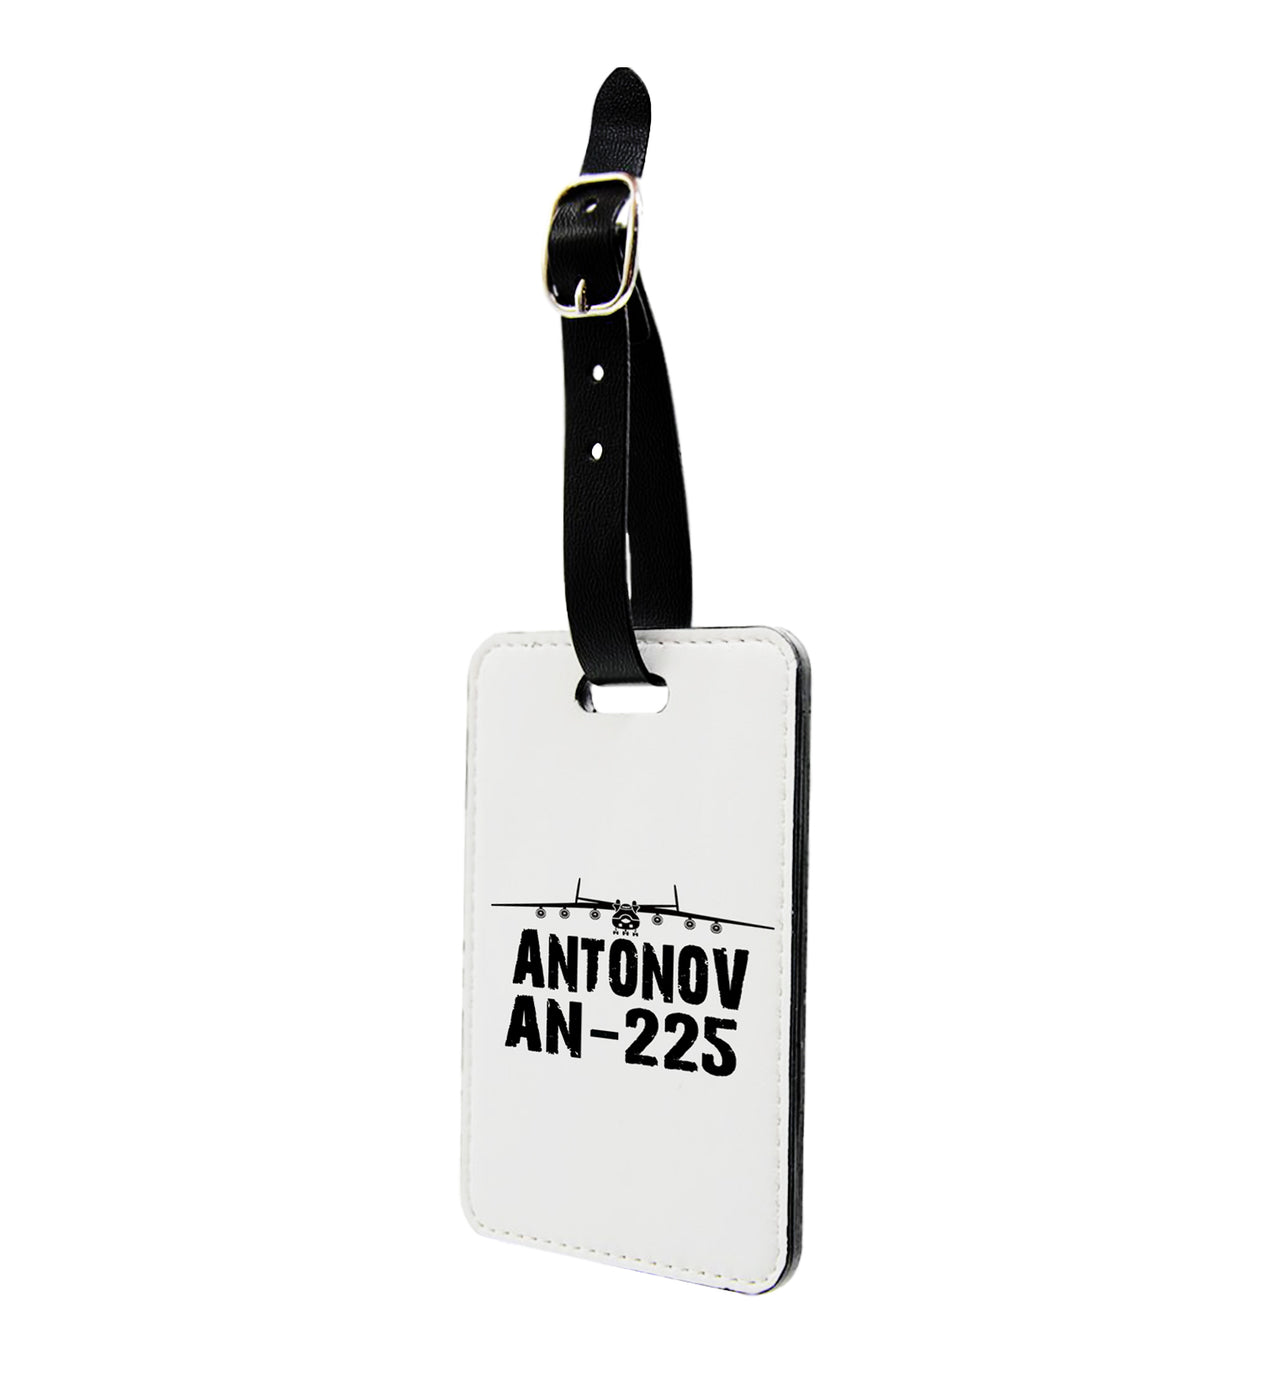 Antonov AN-225 & Plane Designed Luggage Tag